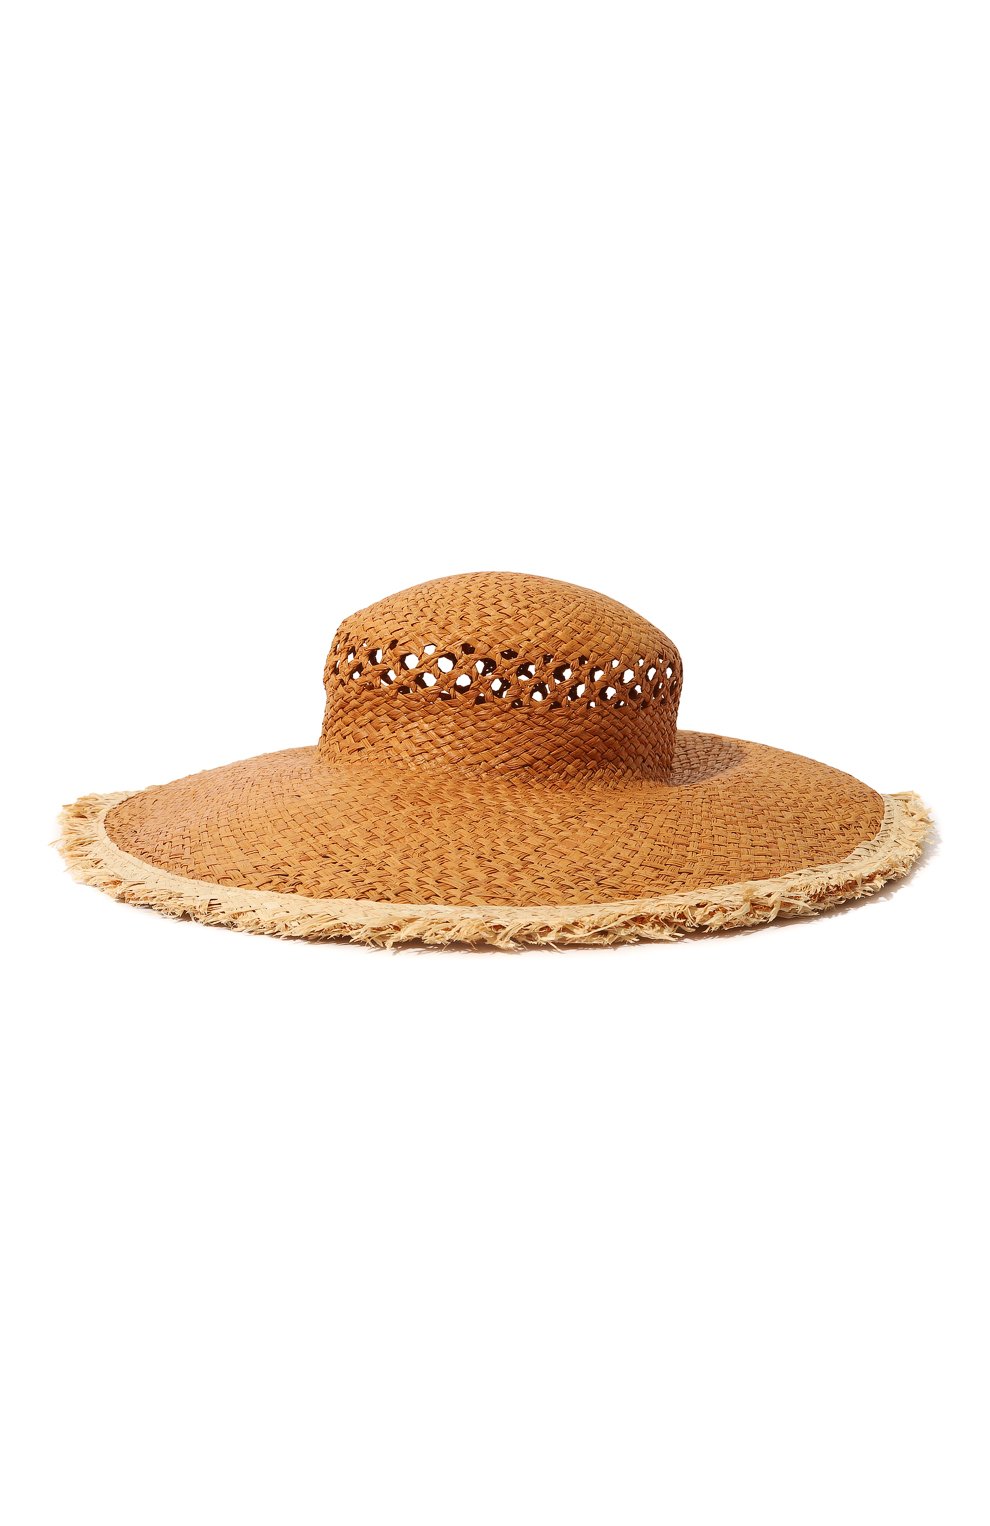 Шляпы Eleventy, Шляпа Eleventy, Италия, Бежевый, Рафия: 100%;, 13267064  - купить